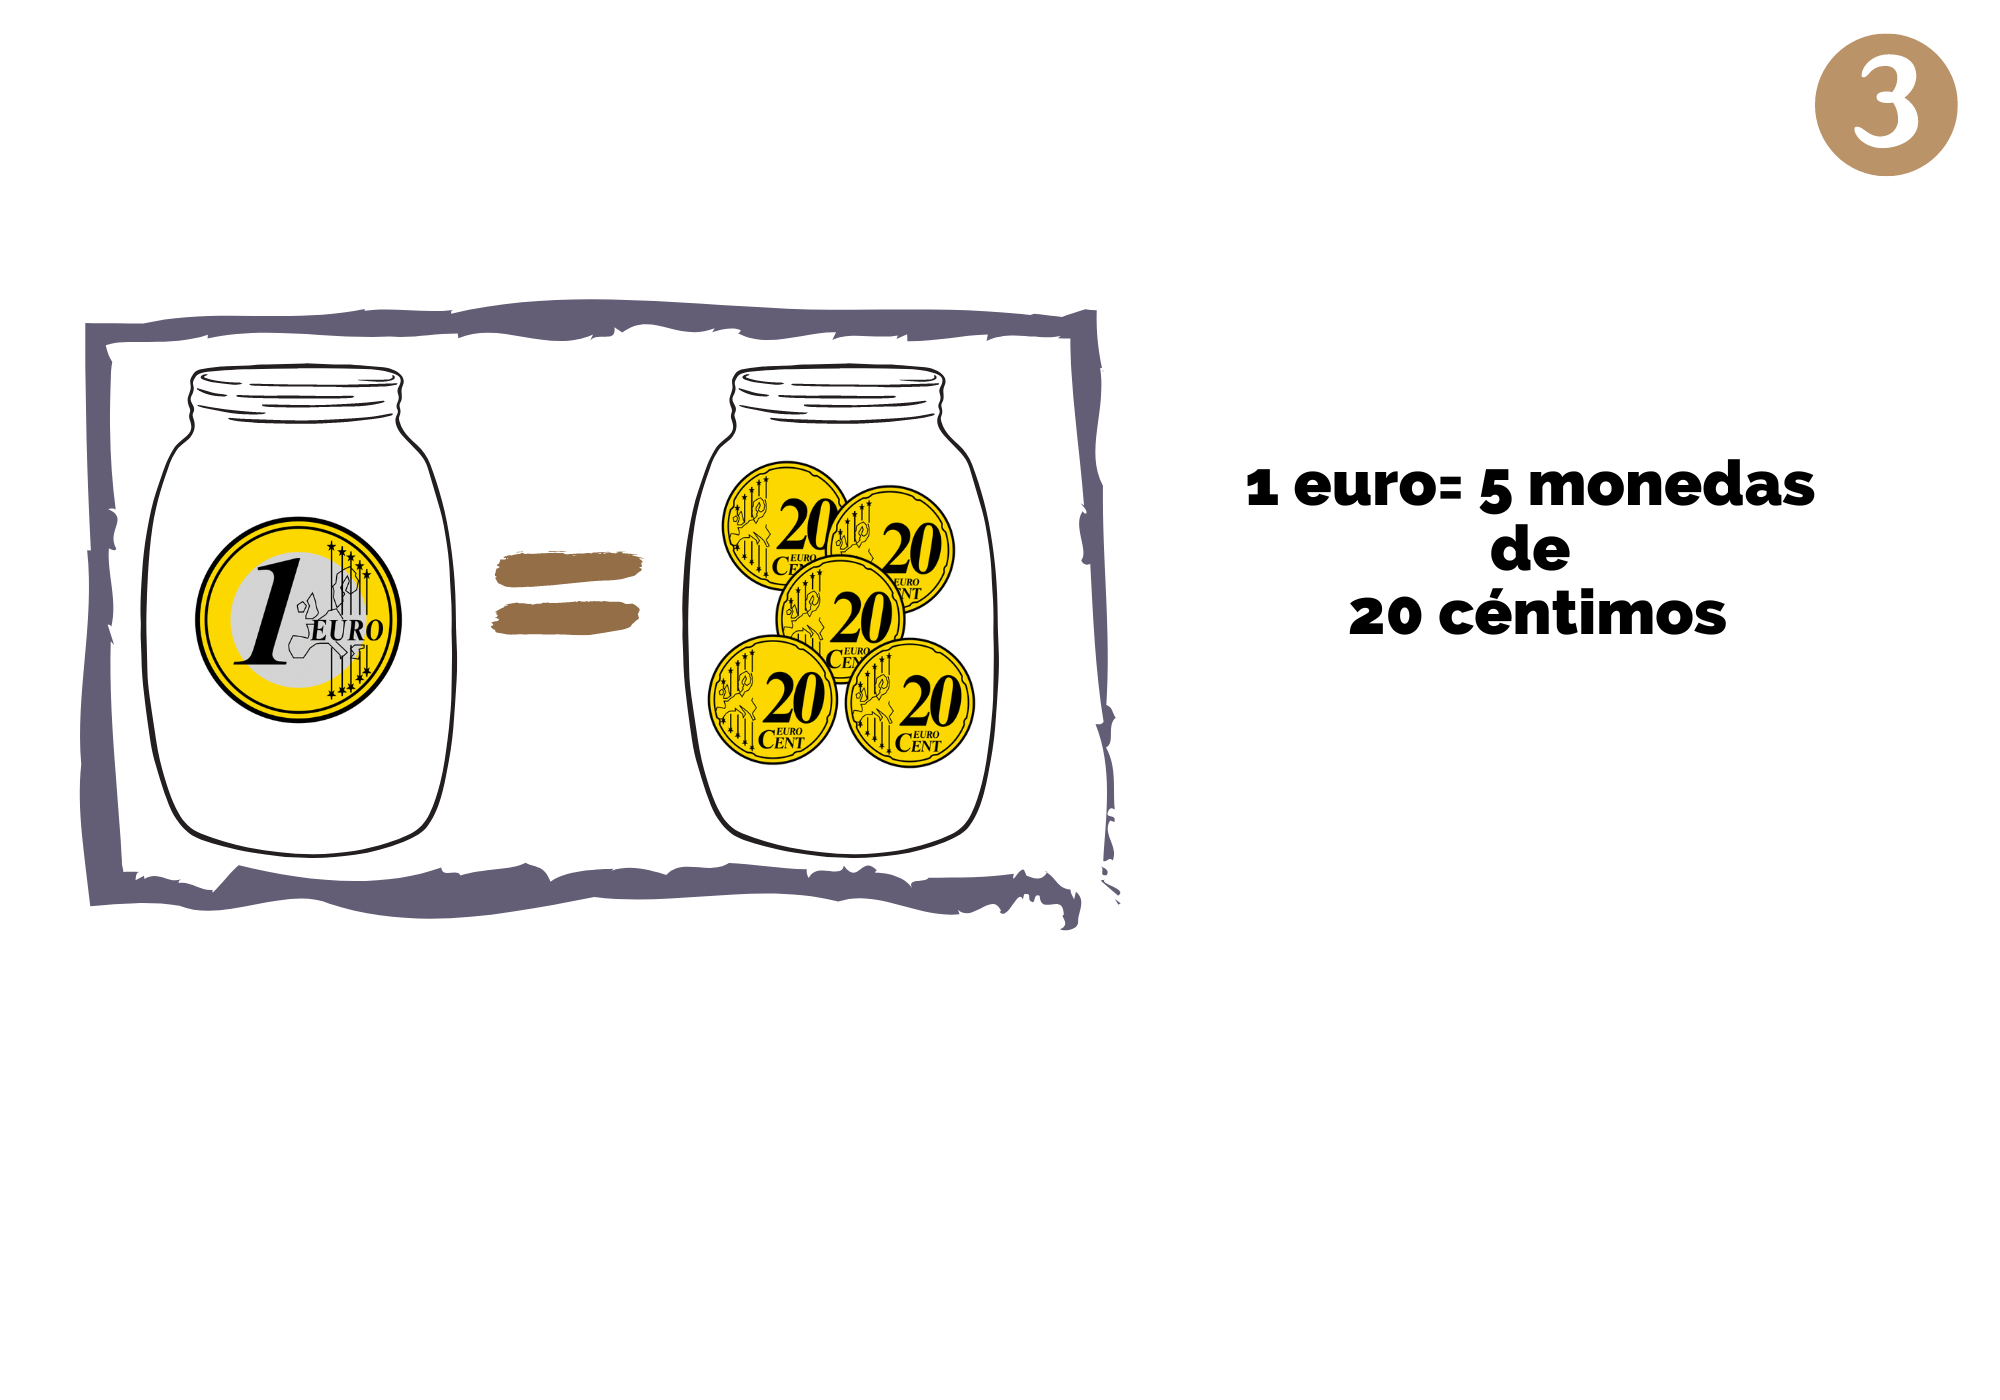 Imagen que muestra una moneda de 1 euro, un signo igual y 5 monedas de 20 céntimos.